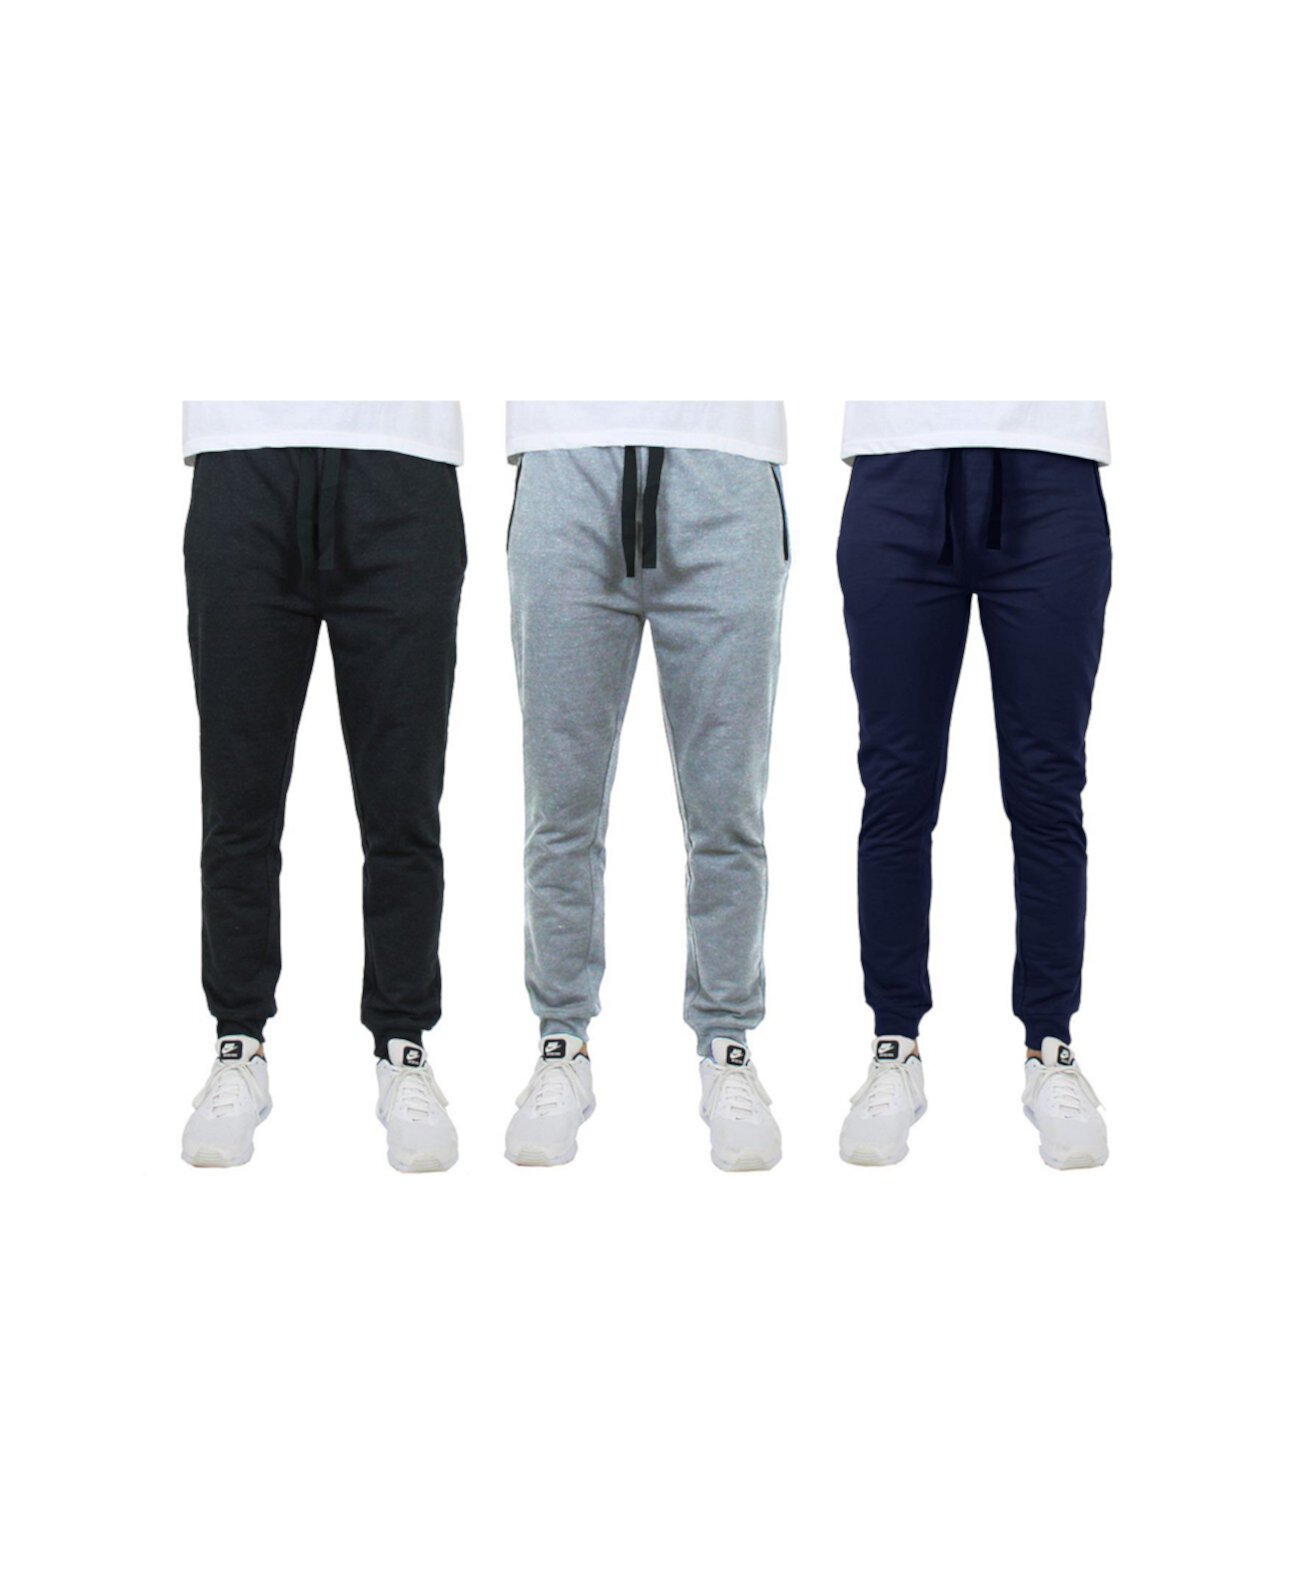 Мужские облегающие брюки для отдыха Jogger из ткани френч терри с карманами на молнии, упаковка из 3 шт. Galaxy By Harvic